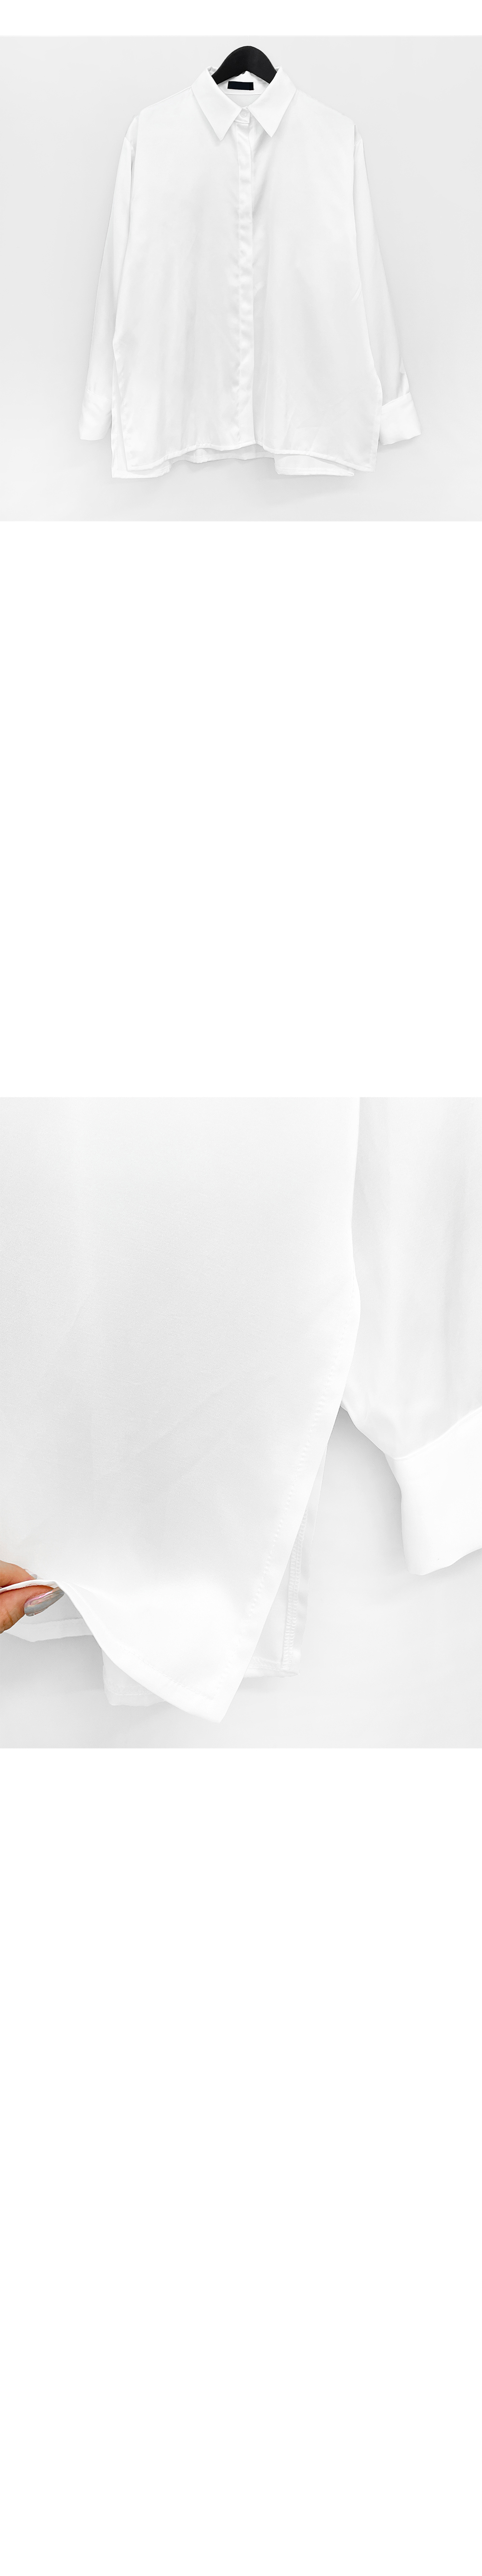 Jacket white color image-S1L11